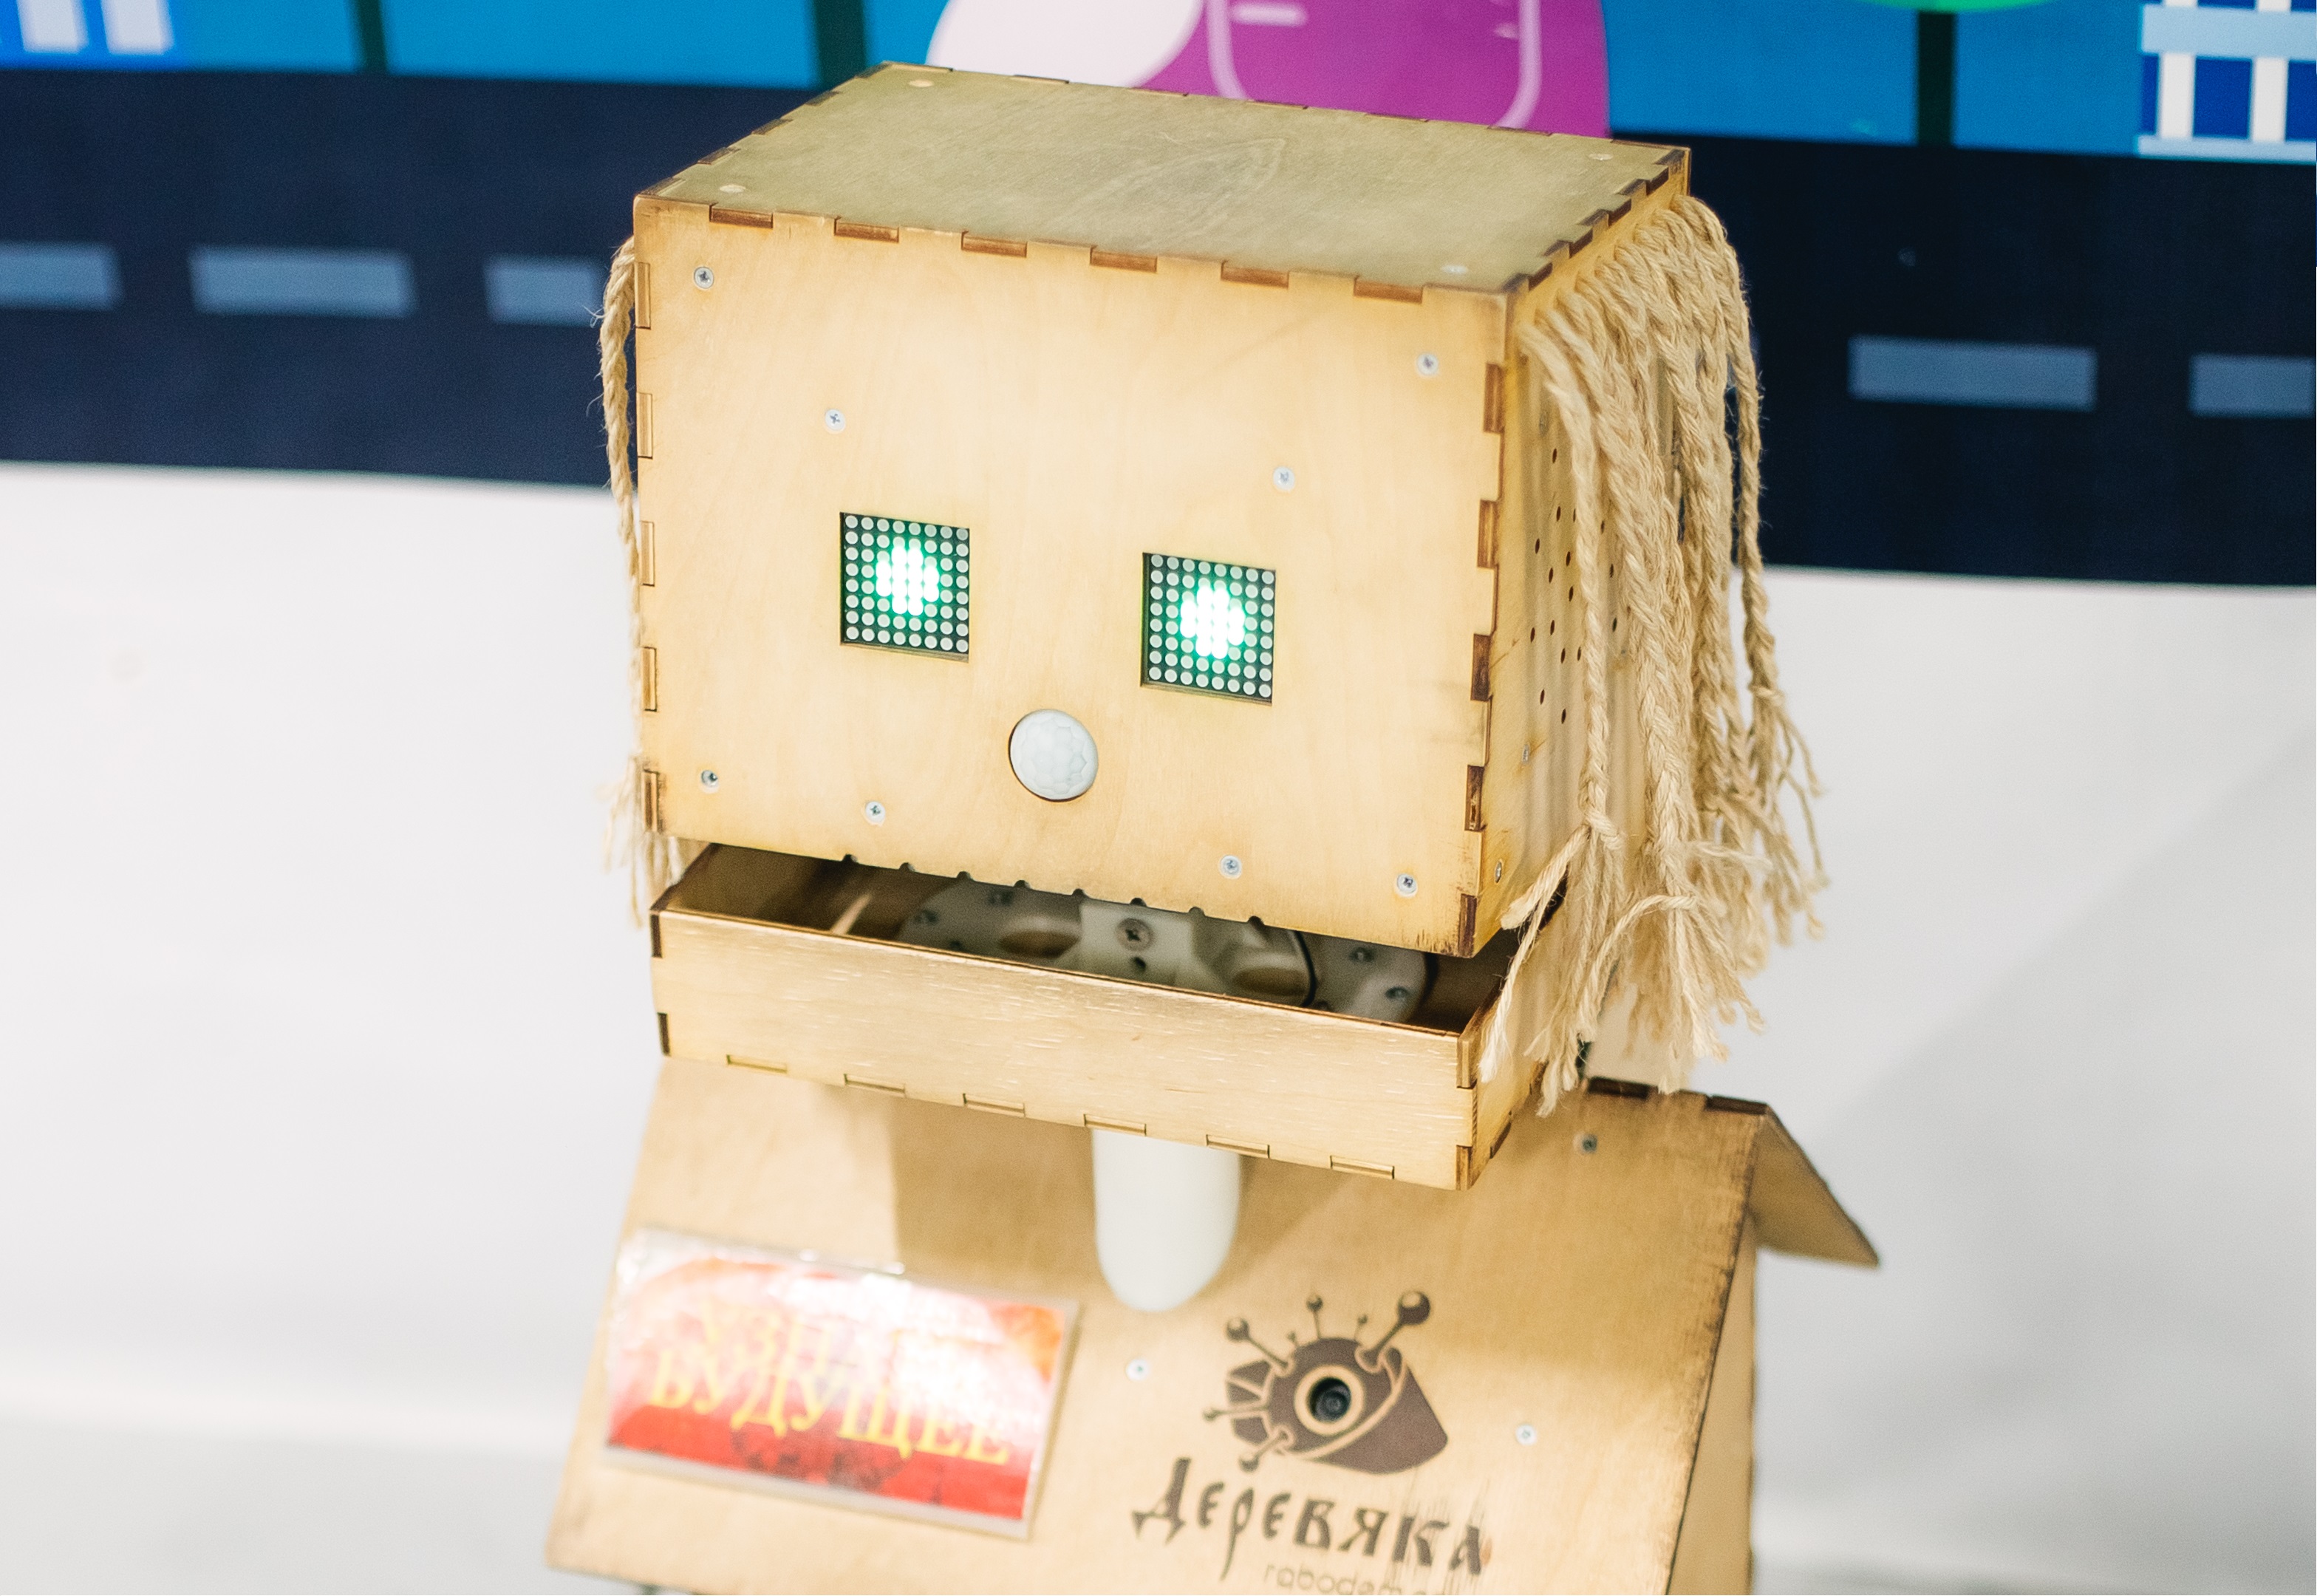 Главное событие этой весны: посещение выставки роботов в Брянске